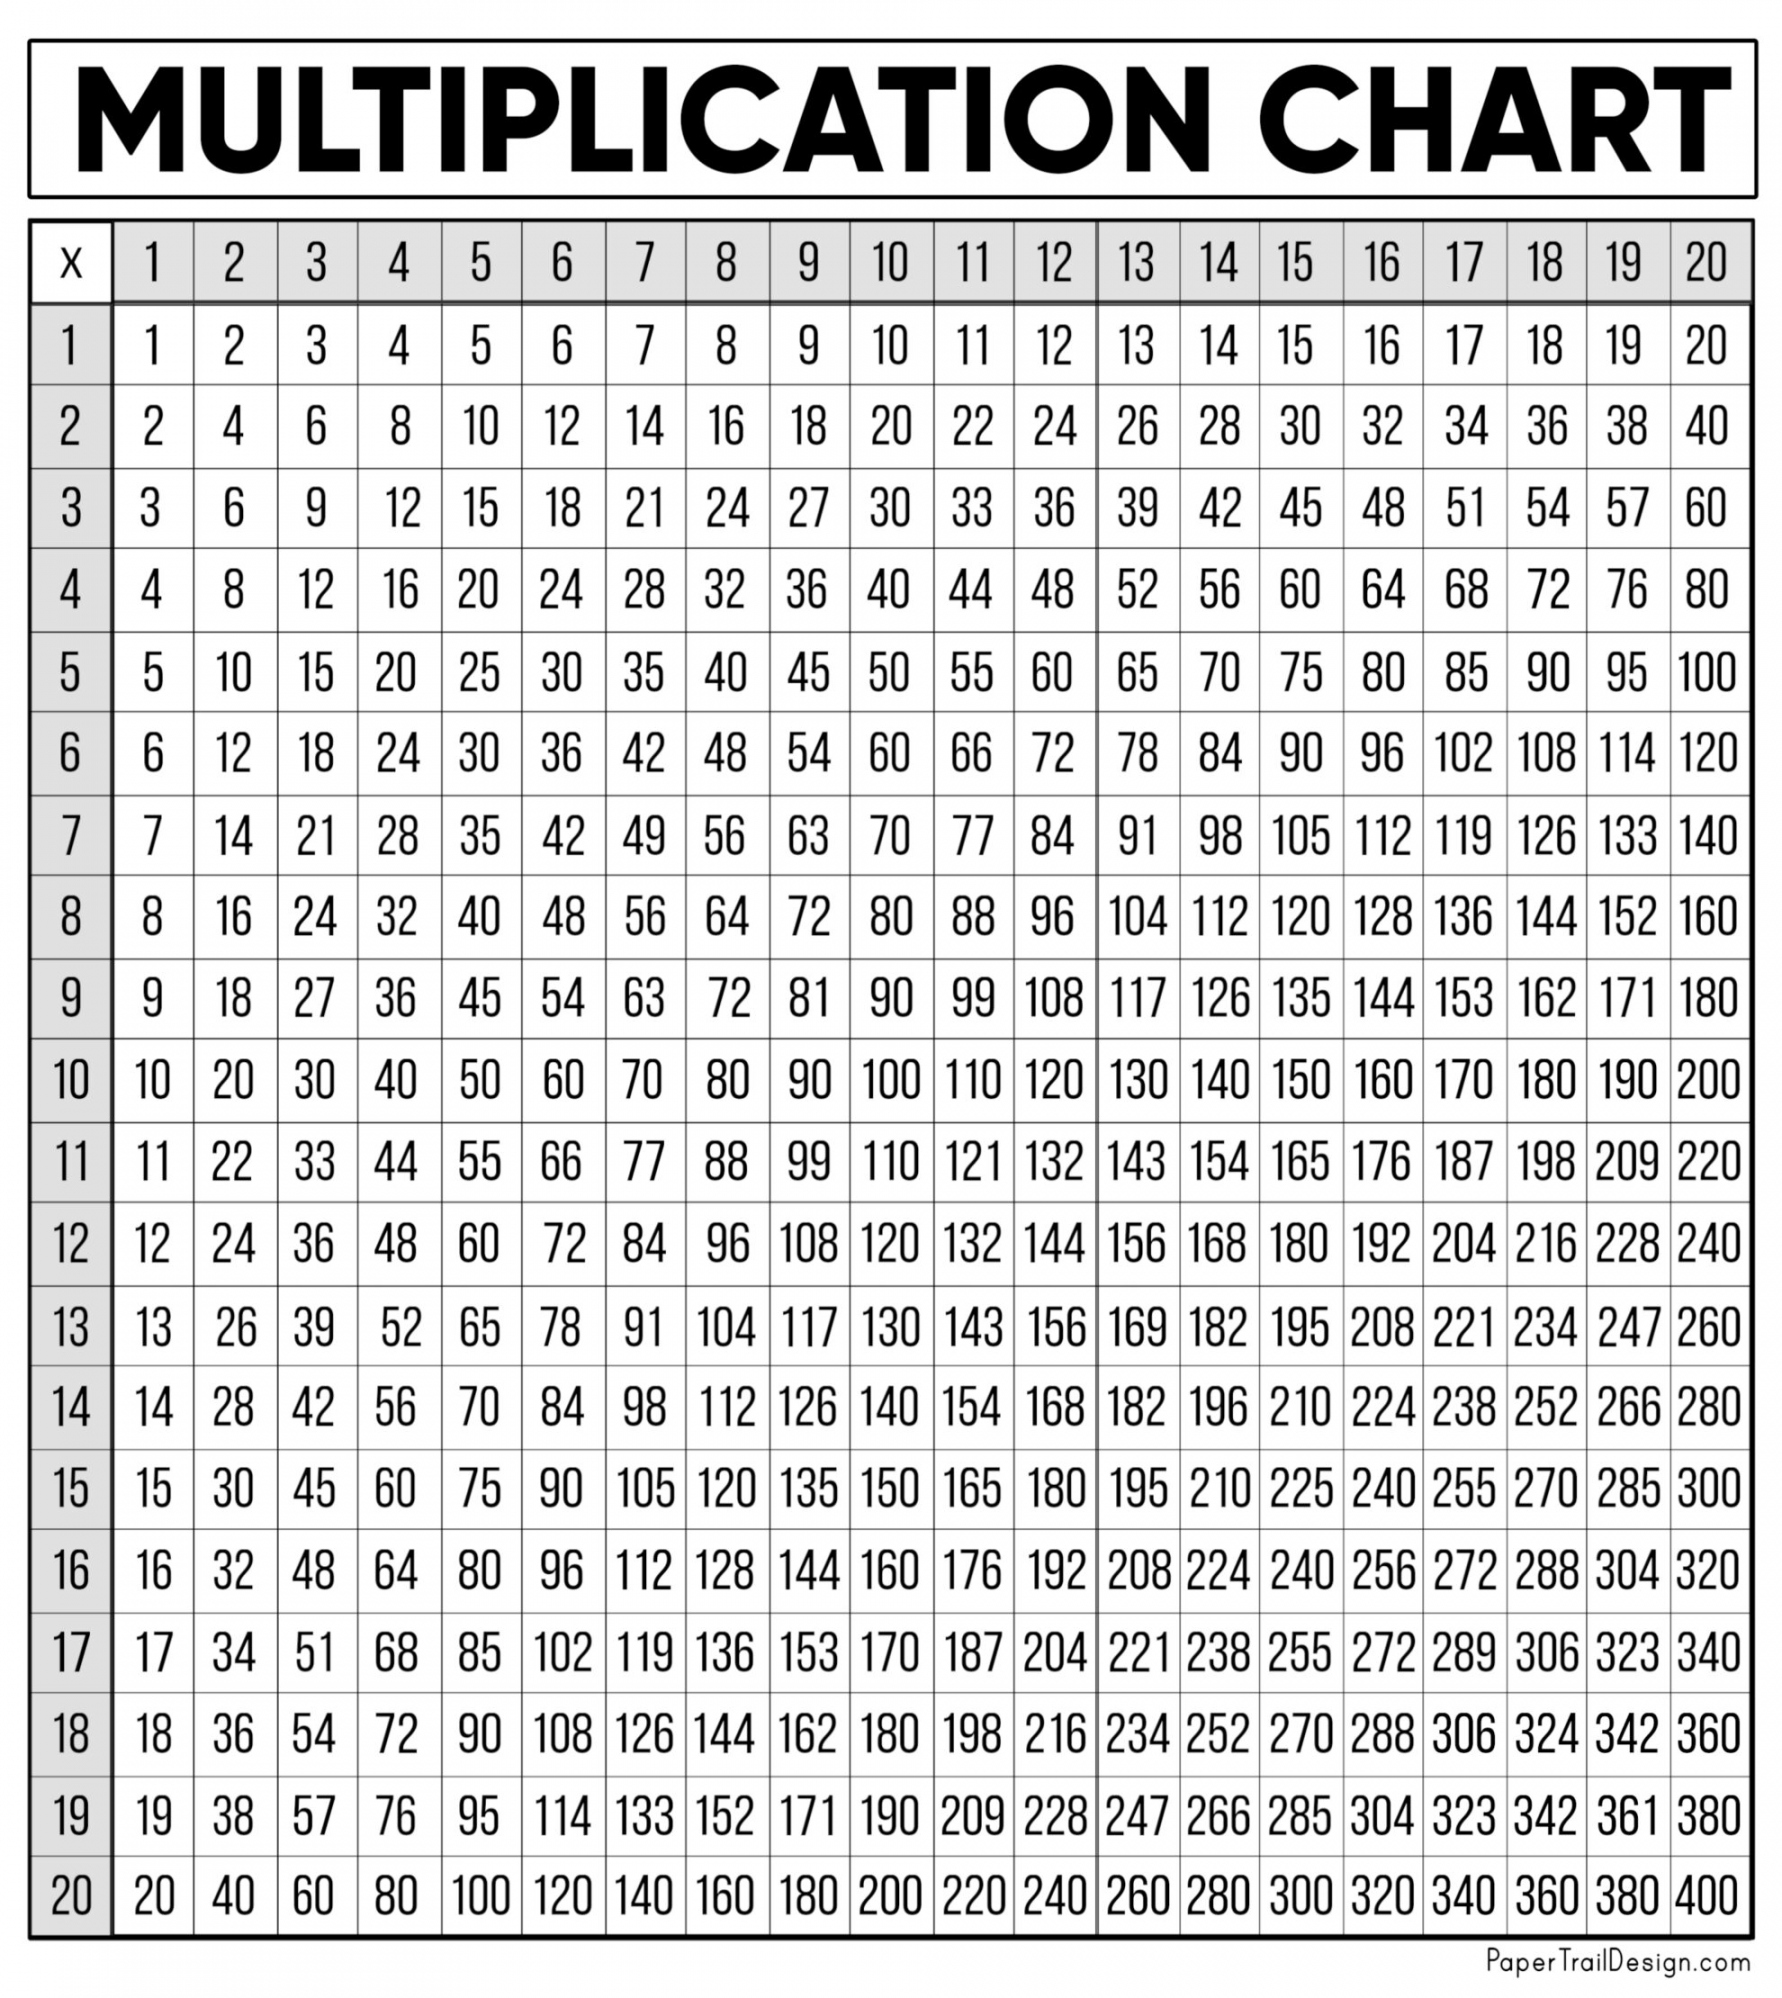 Free Multiplication Chart Printable - Printable - Free Multiplication Chart Printable - Paper Trail Design